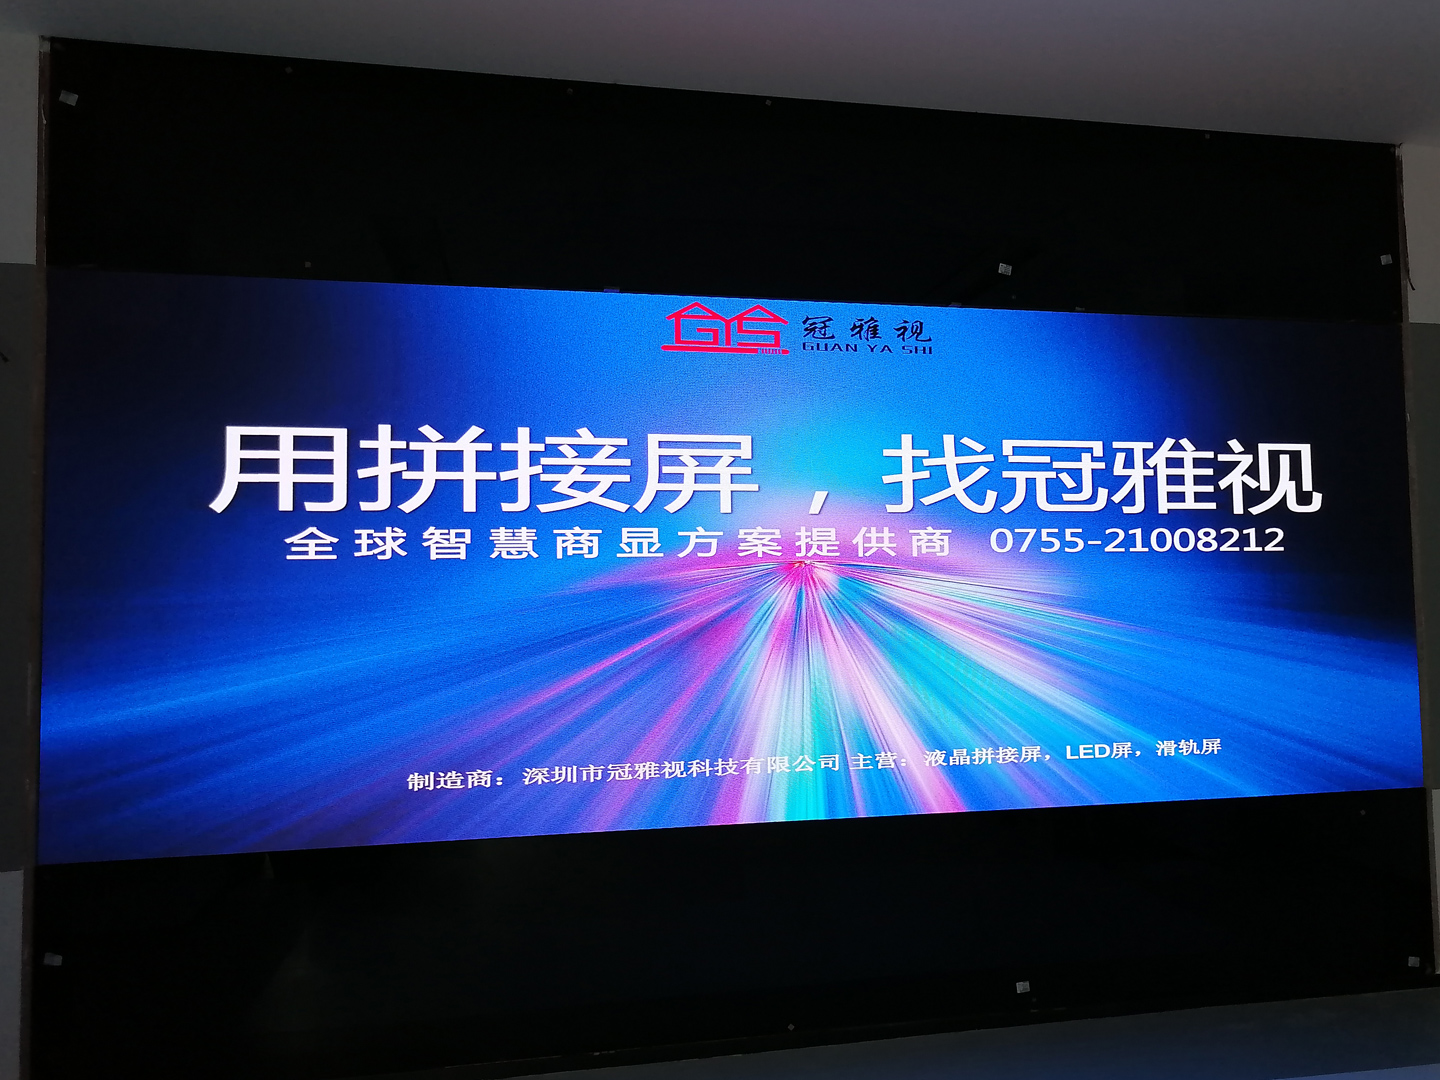 深圳某公司海佳彩亮2套LED,P1.66,显示大屏